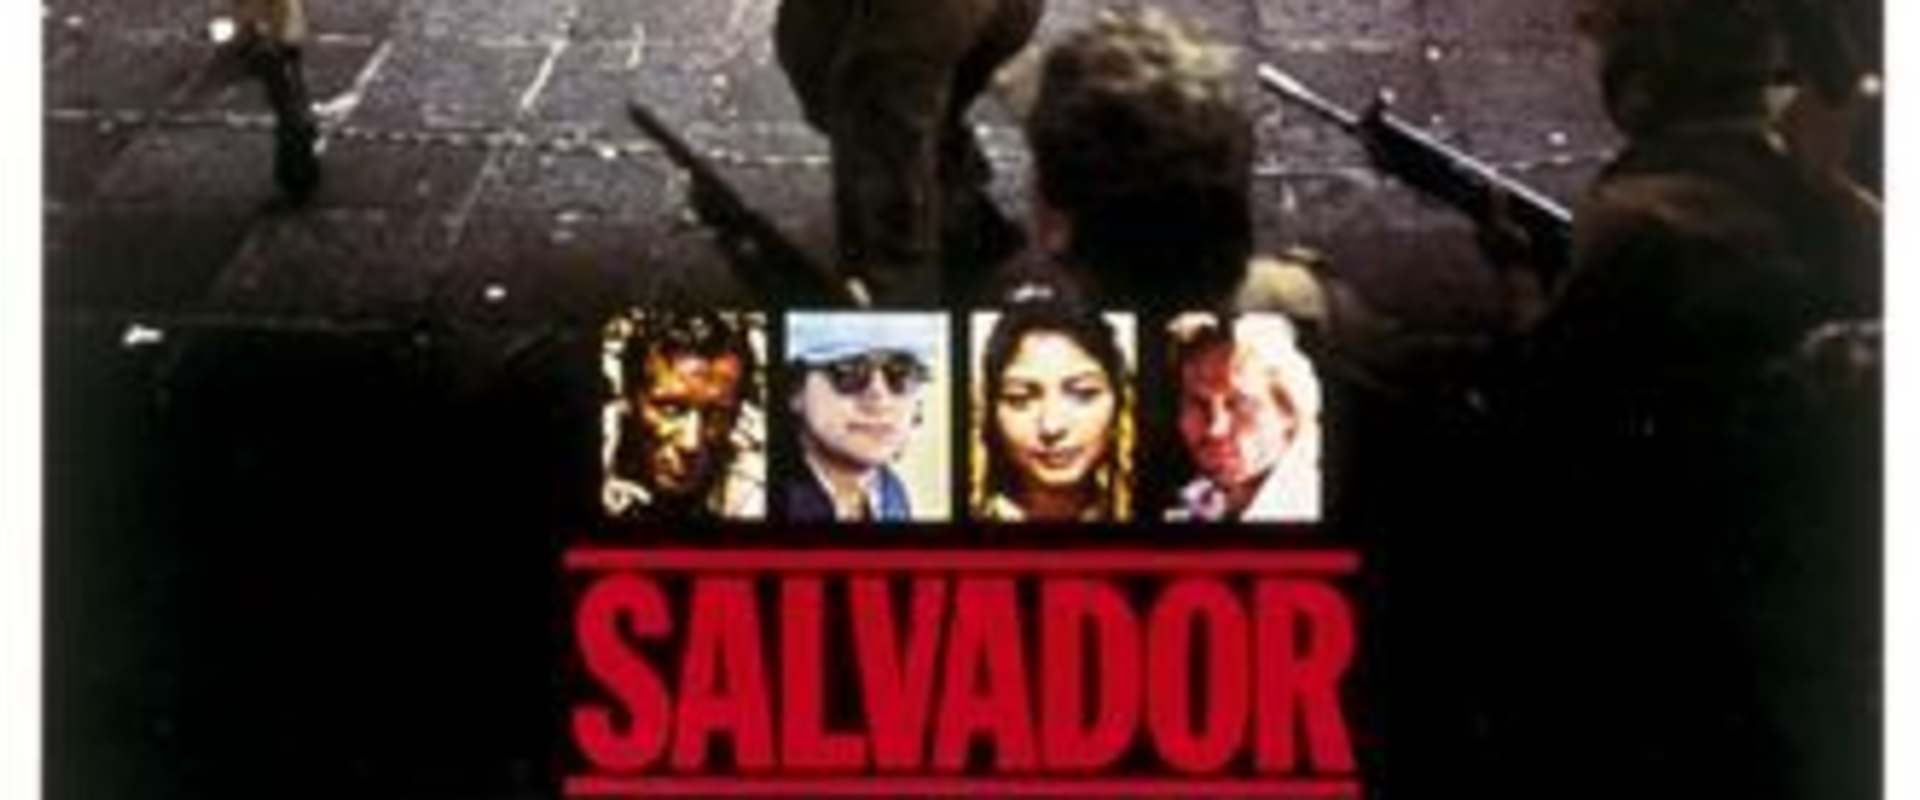 Salvador background 2